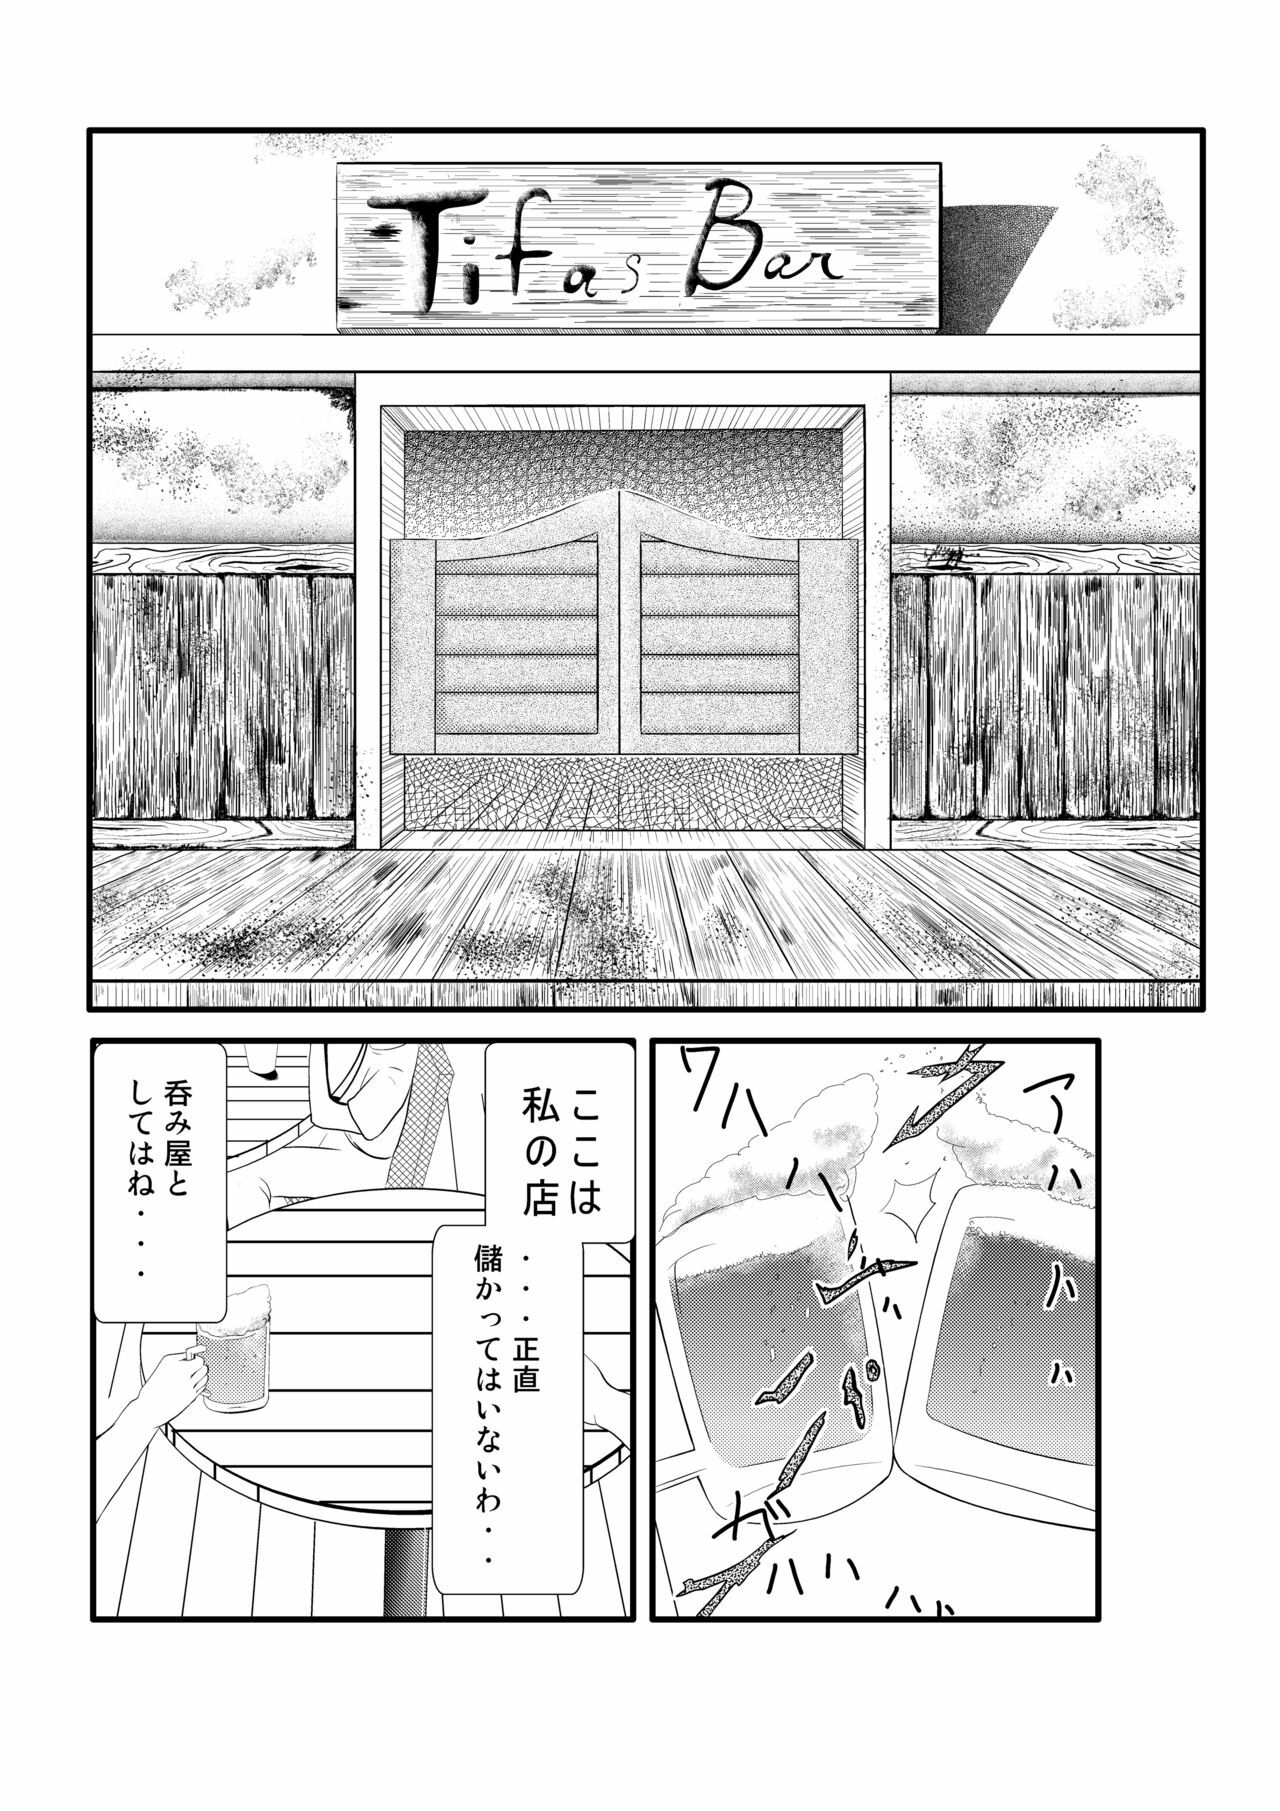 [Ouhoushi] Nomiya no Tifa-san - Tifa's Bar (Final Fantasy VII) page 2 full